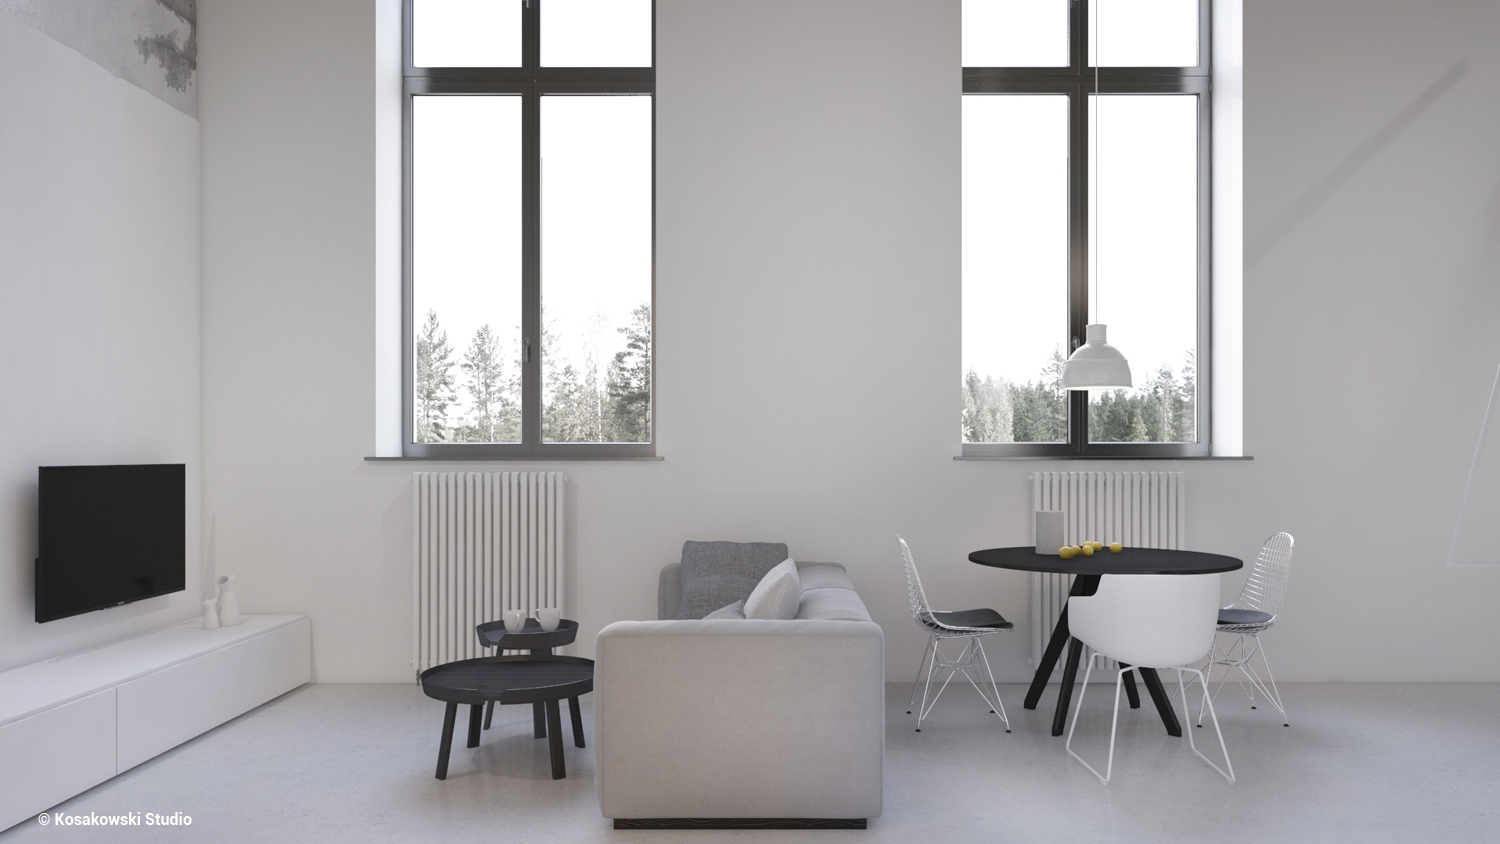 Małe przestrzenie: minimalizm i styl industrialny, czyli Soft Loft na warszawskiej Pradze